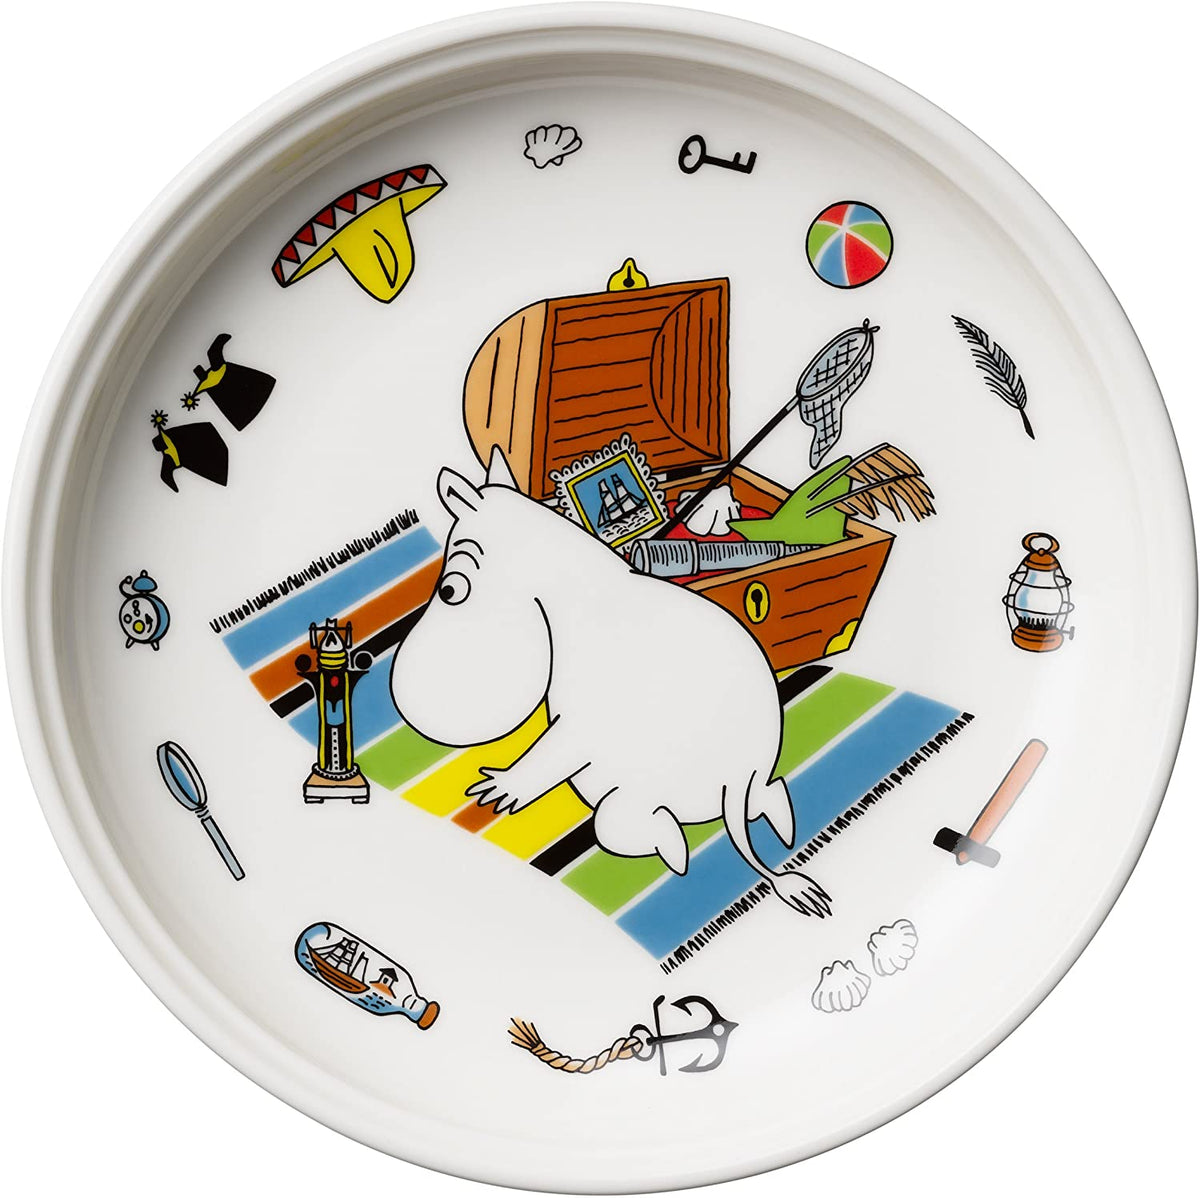 Zestaw porcelanowy dla dzieci Muminek Arabia Finland